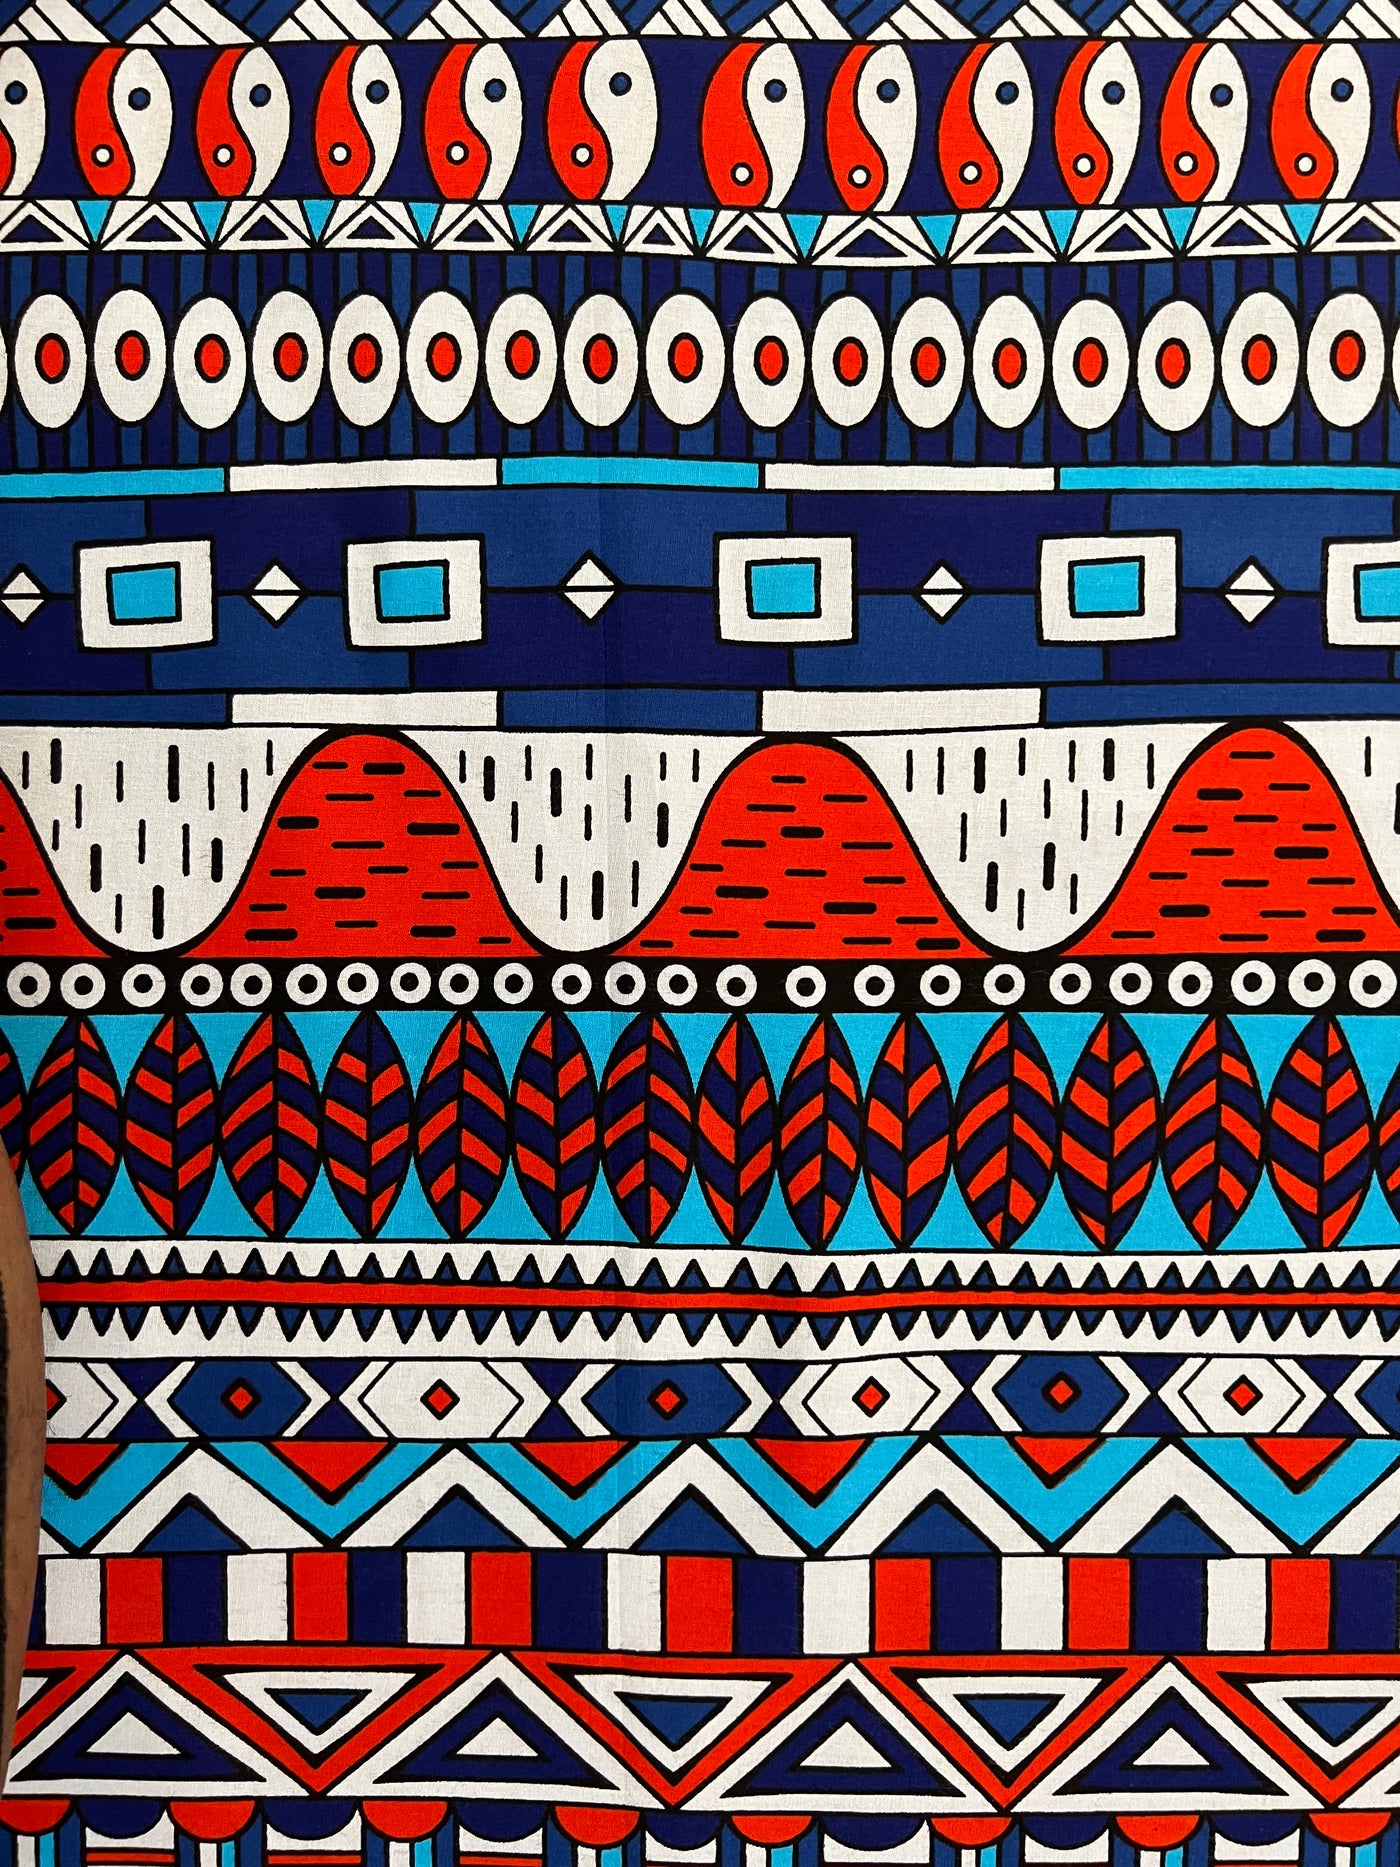 Ankara Fabric - 137104B